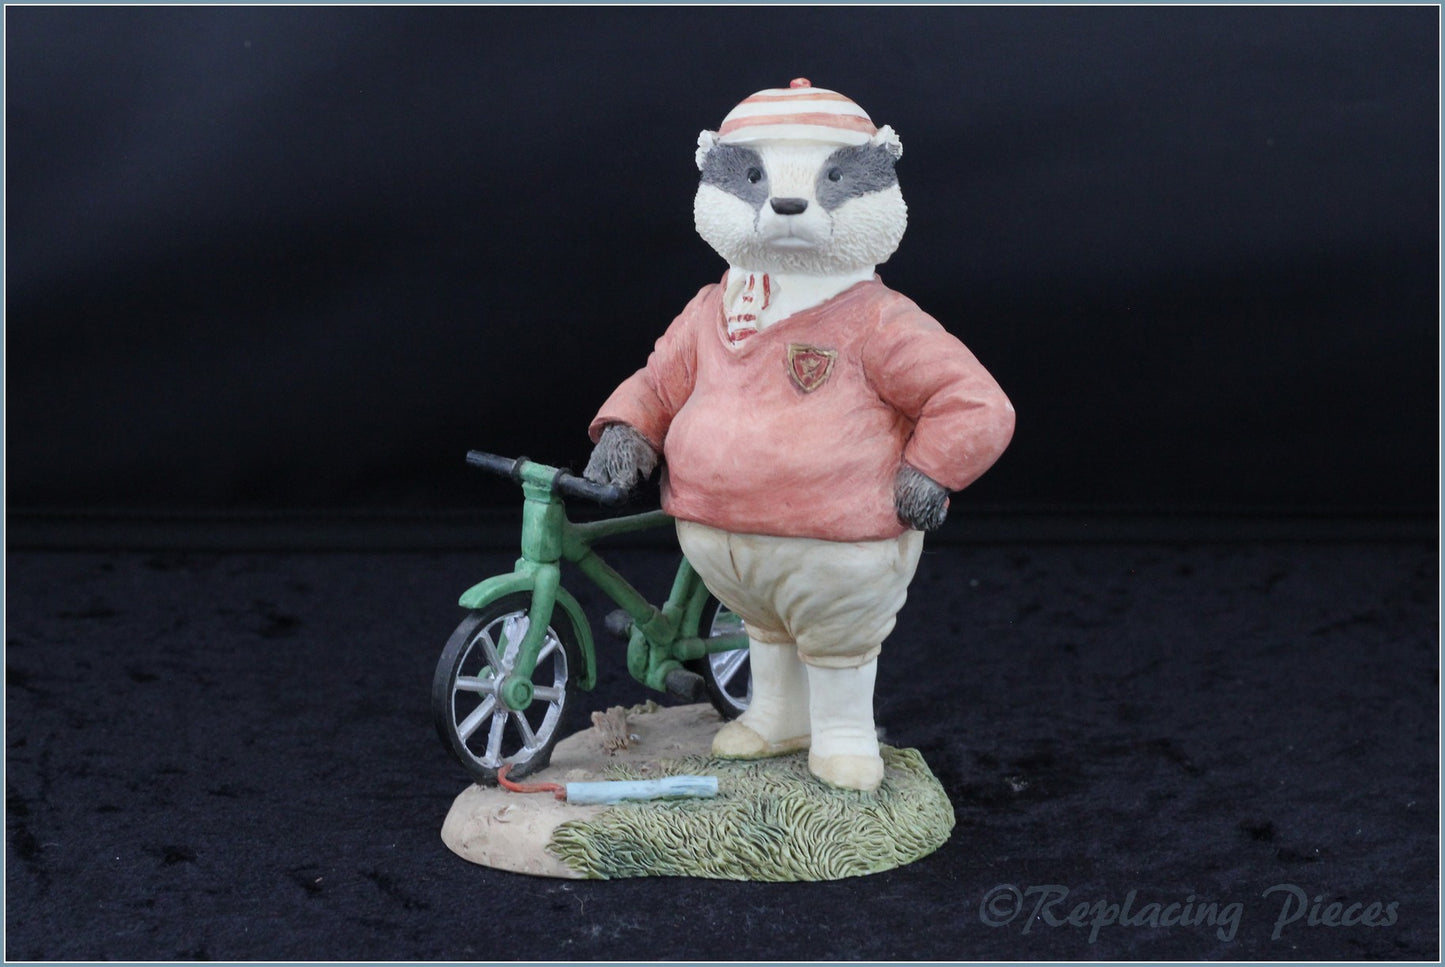 Villeroy & Boch - Foxwood Tales Figurines - No.6 Mr Gruffey